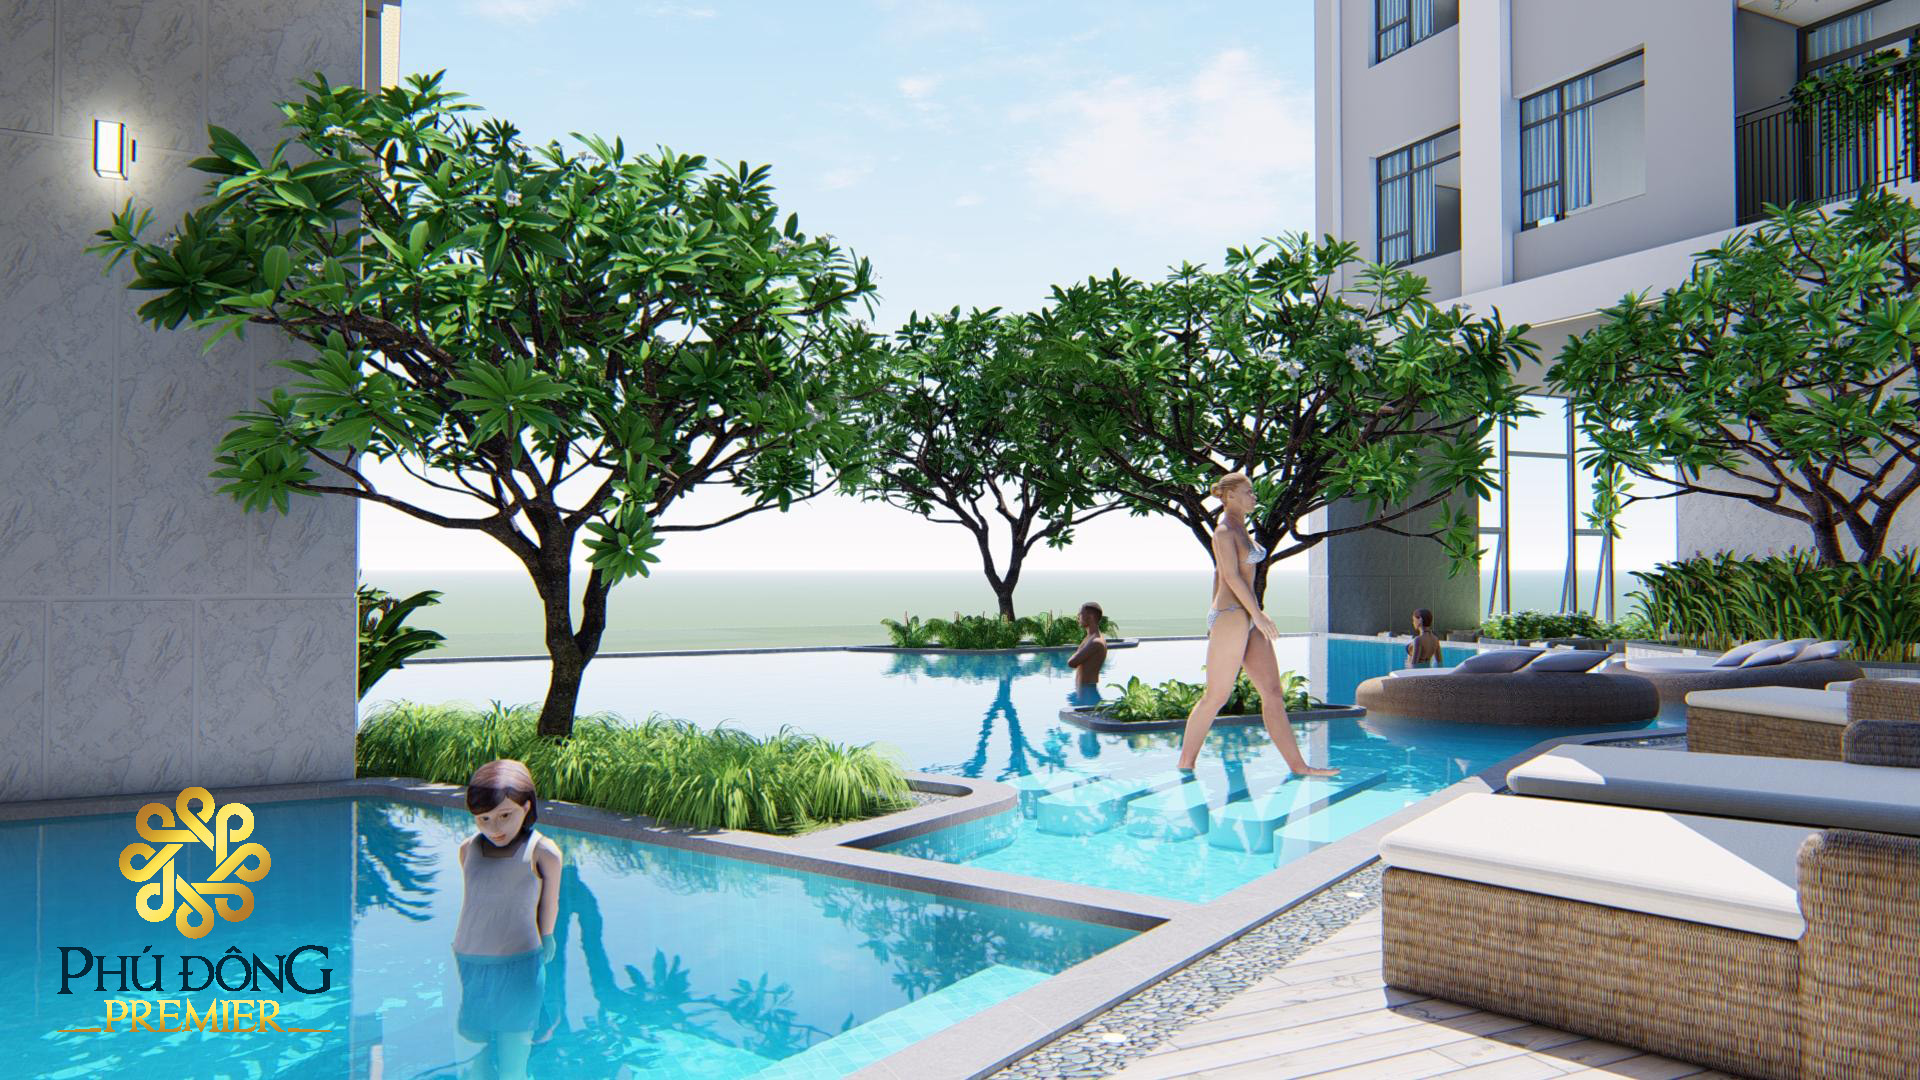 Hồ bơi nước nóng căn hộ Phú Đông Sky Garden